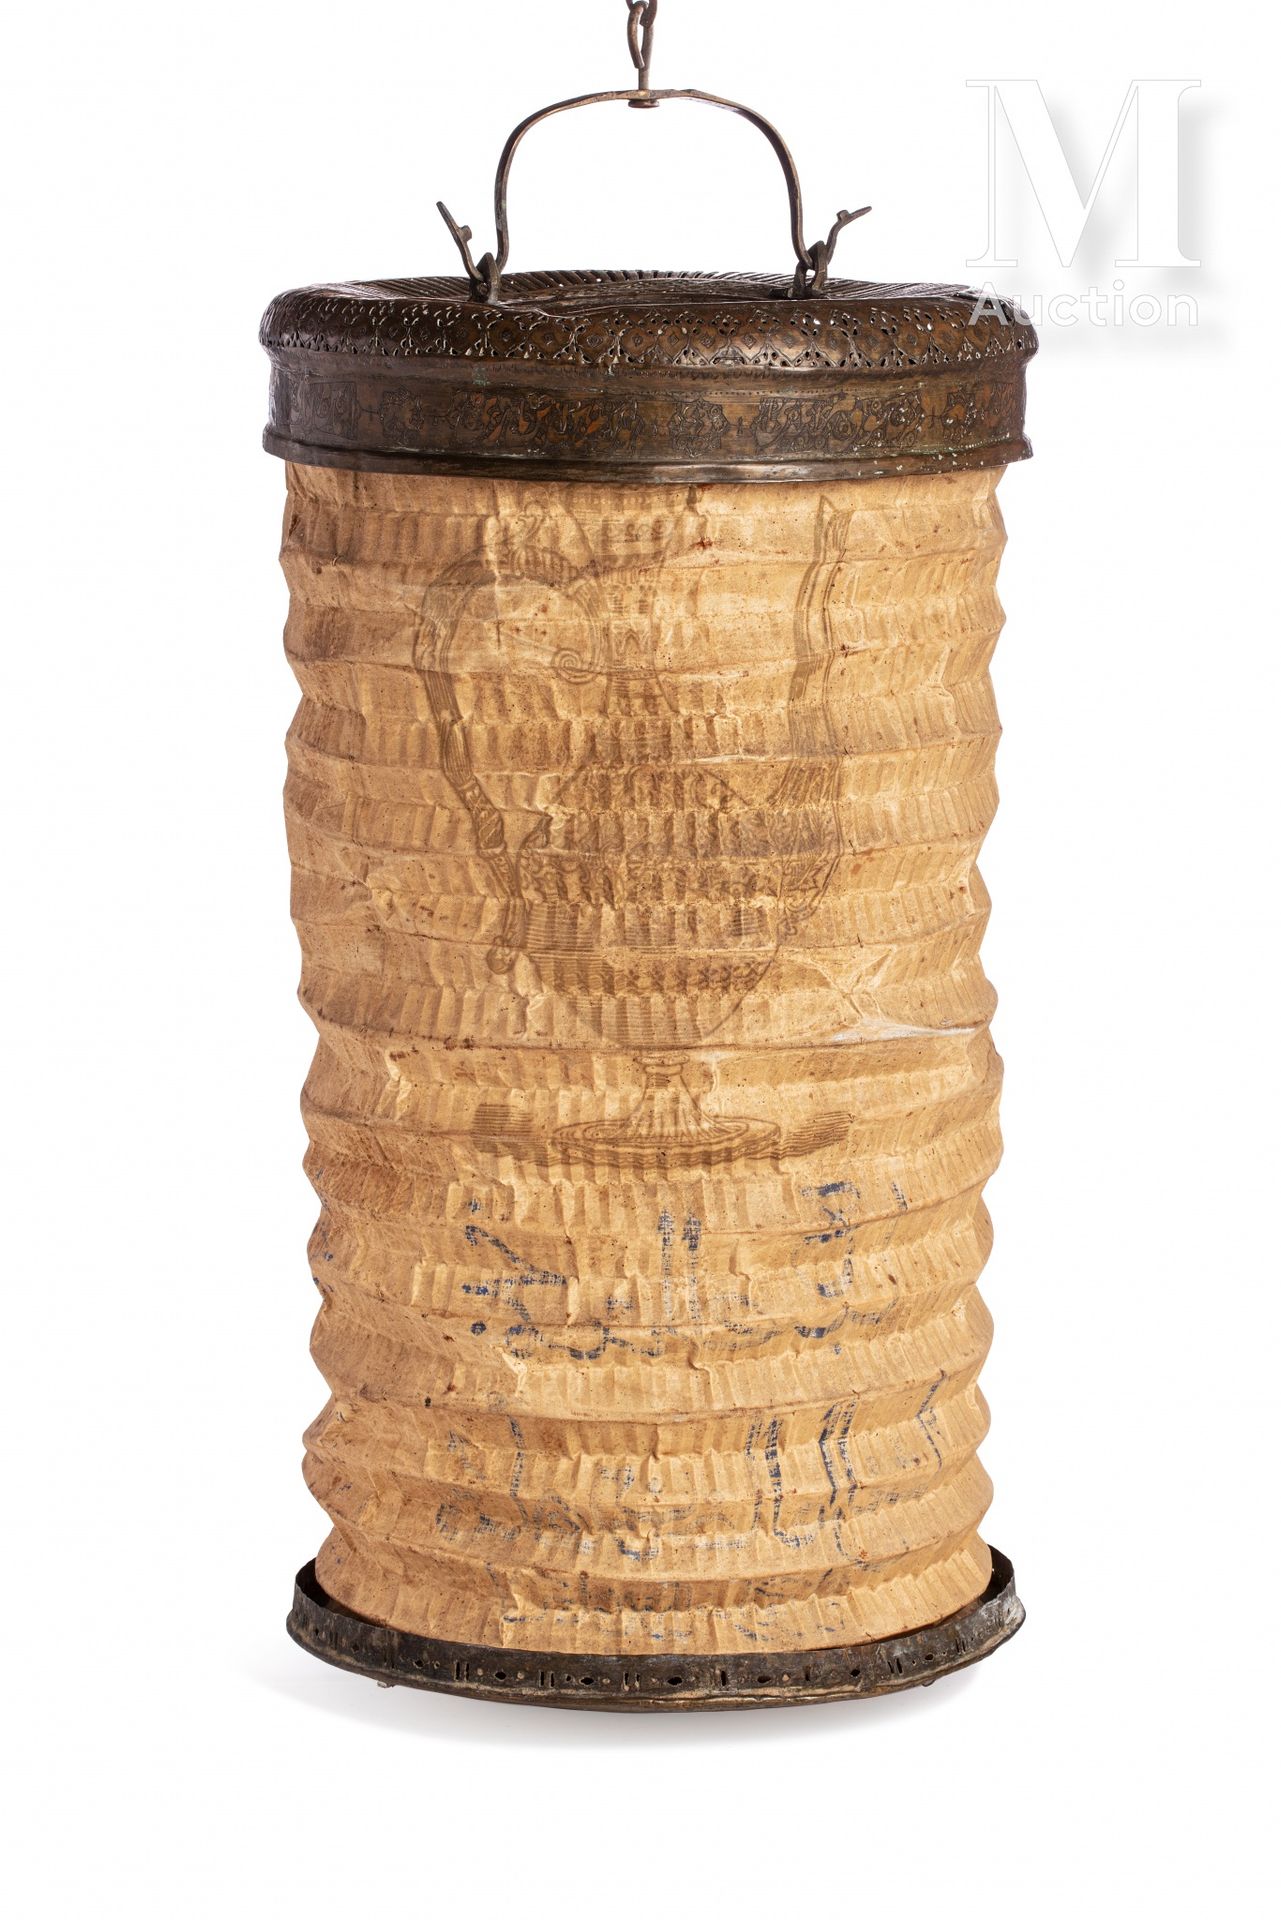 Lanterne à main - Fener 奥斯曼或卡贾尔艺术，19世纪

镂空和錾刻的铜，以及手绘的棉。

灯笼的铜制端部刻有书画装饰，与多裂纹的小鸟交替&hellip;